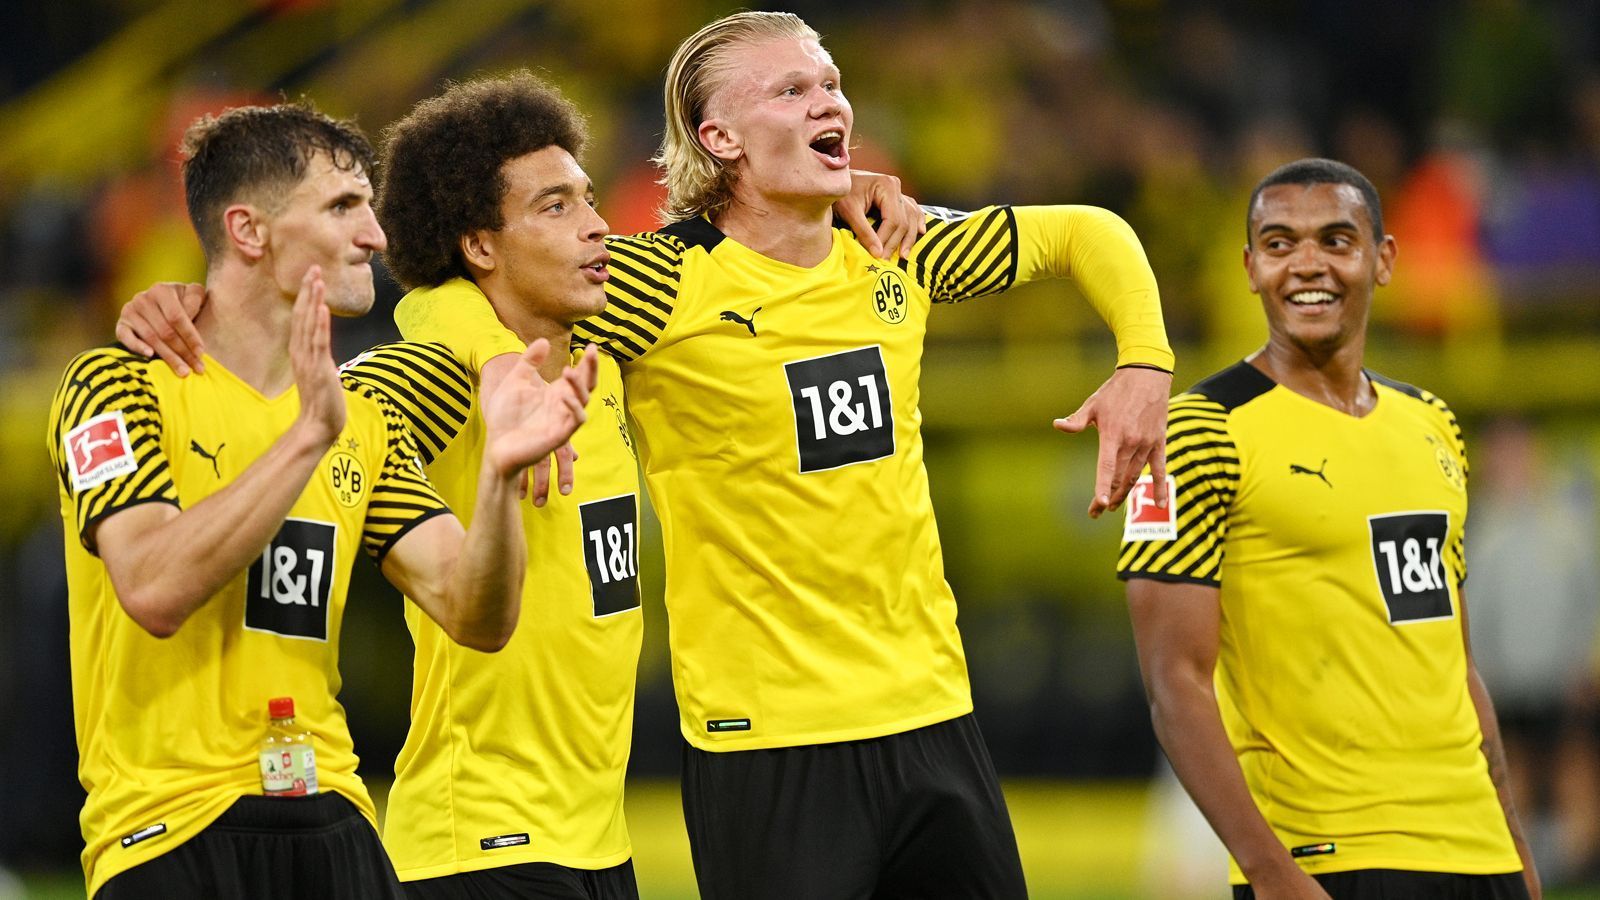 
                <strong>Platz 18 - Borussia Dortmund (Deutschland)</strong><br>
                Gesamte Ablösesumme für den aktuellen Kader: 346 Millionen Euro
              